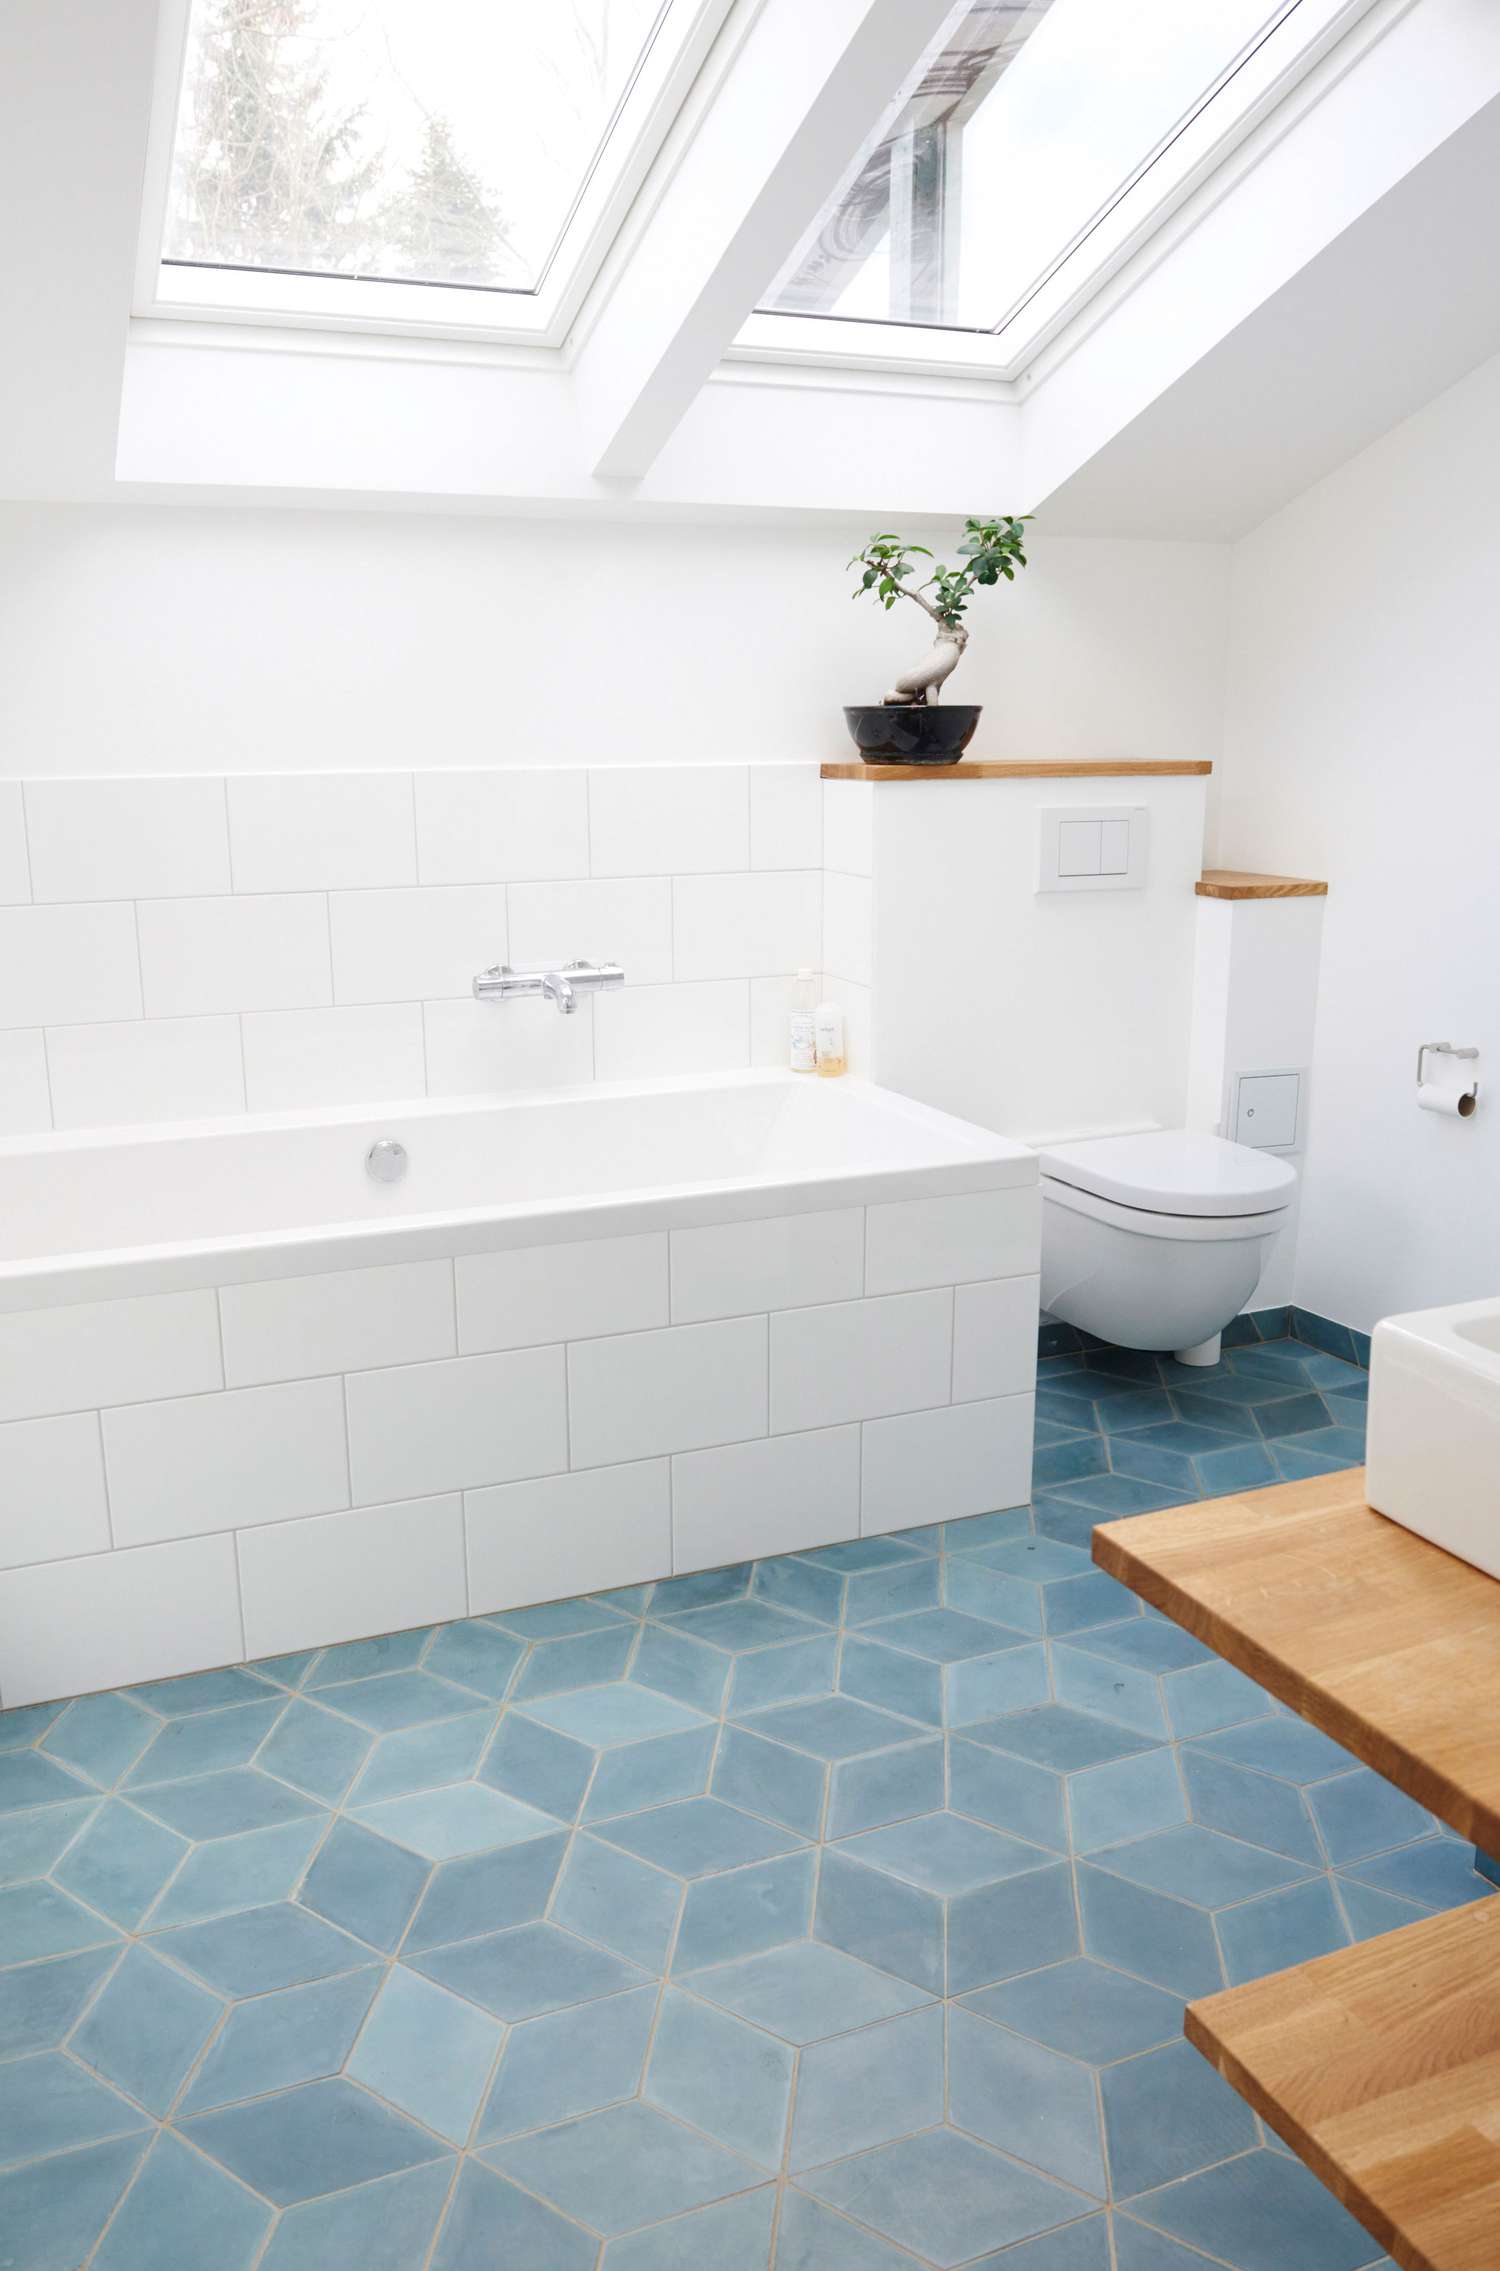 Baño blanco con azulejos azules y detalles en madera